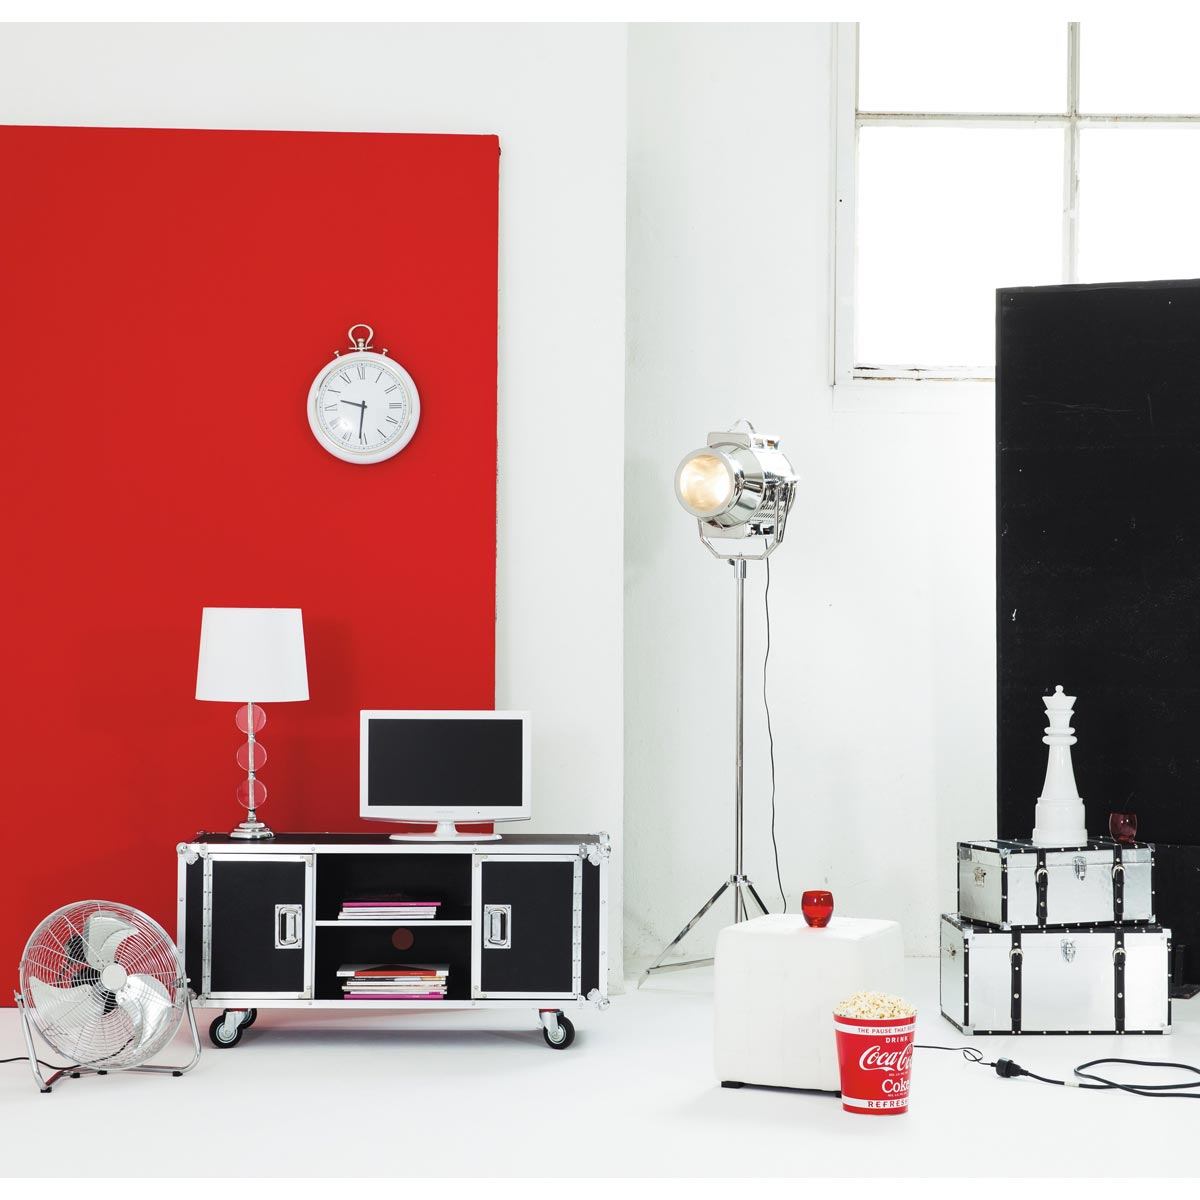 intérieur design moderne meuble tv moderne roulettes déco intérieur mur rouge lampe design idée aménagement déco moderne